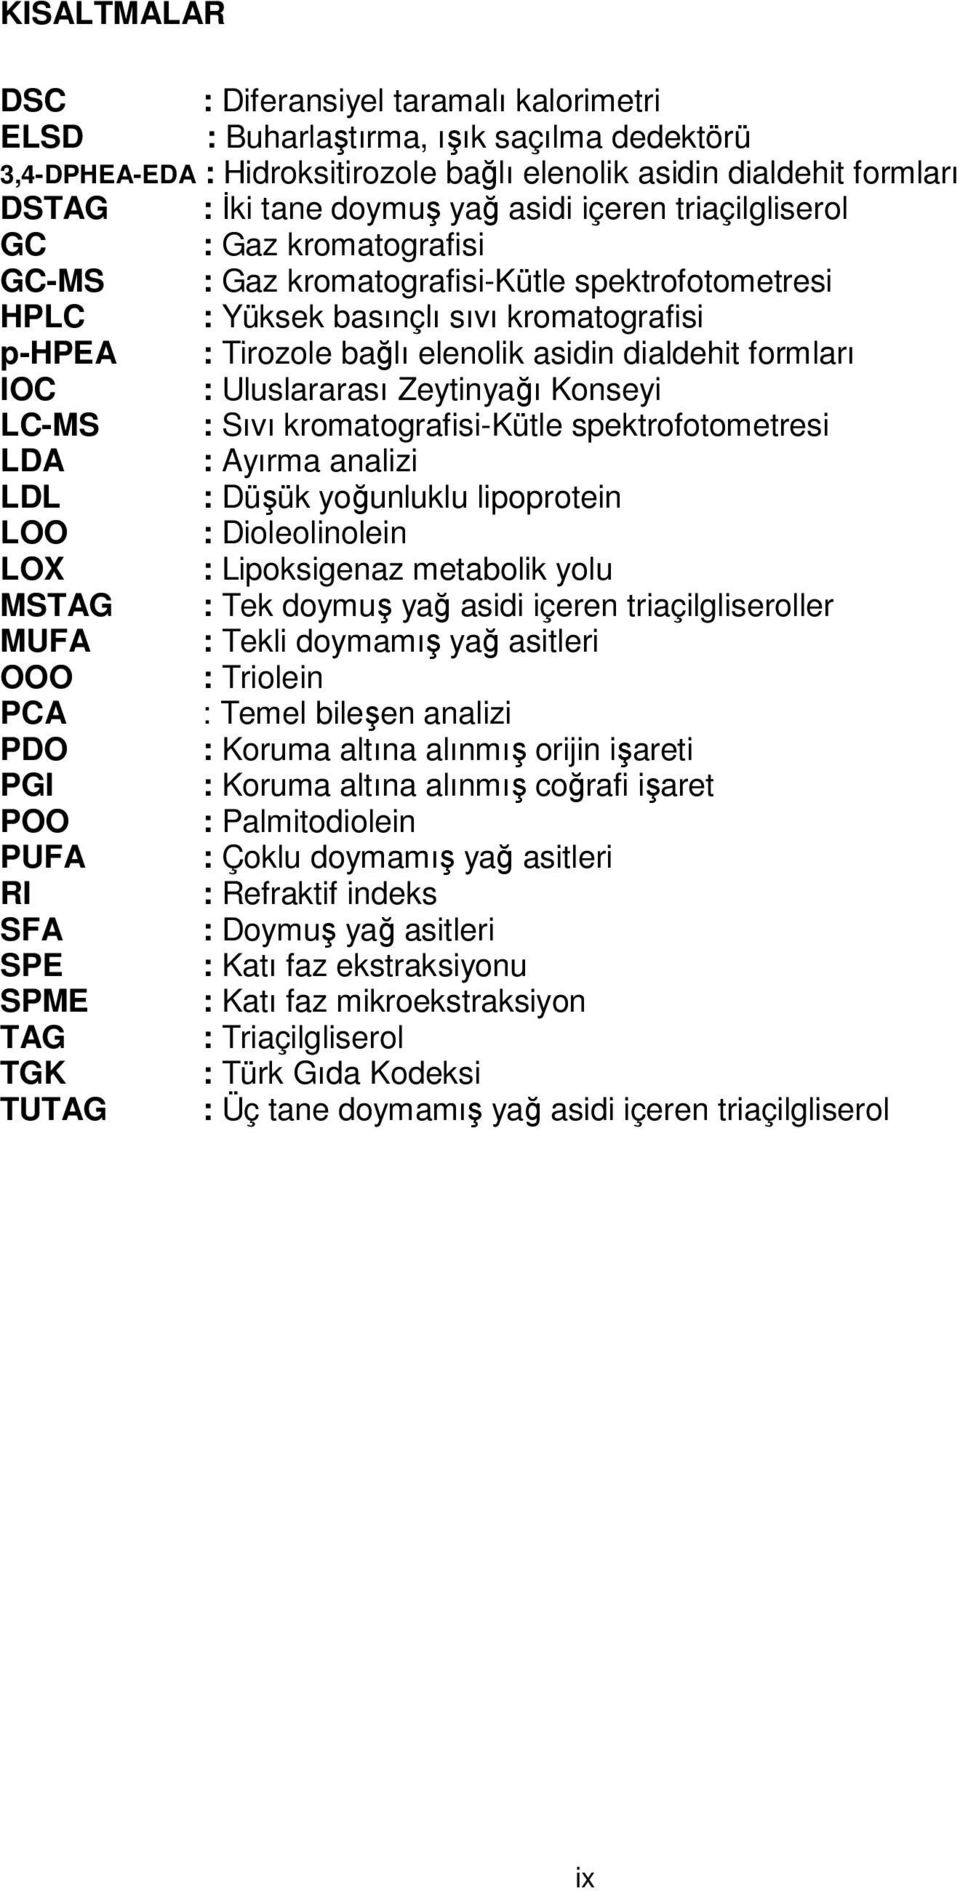 formları IOC : Uluslararası Zeytinyağı Konseyi LC-MS : Sıvı kromatografisi-kütle spektrofotometresi LDA : Ayırma analizi LDL : Düşük yoğunluklu lipoprotein LOO : Dioleolinolein LOX : Lipoksigenaz